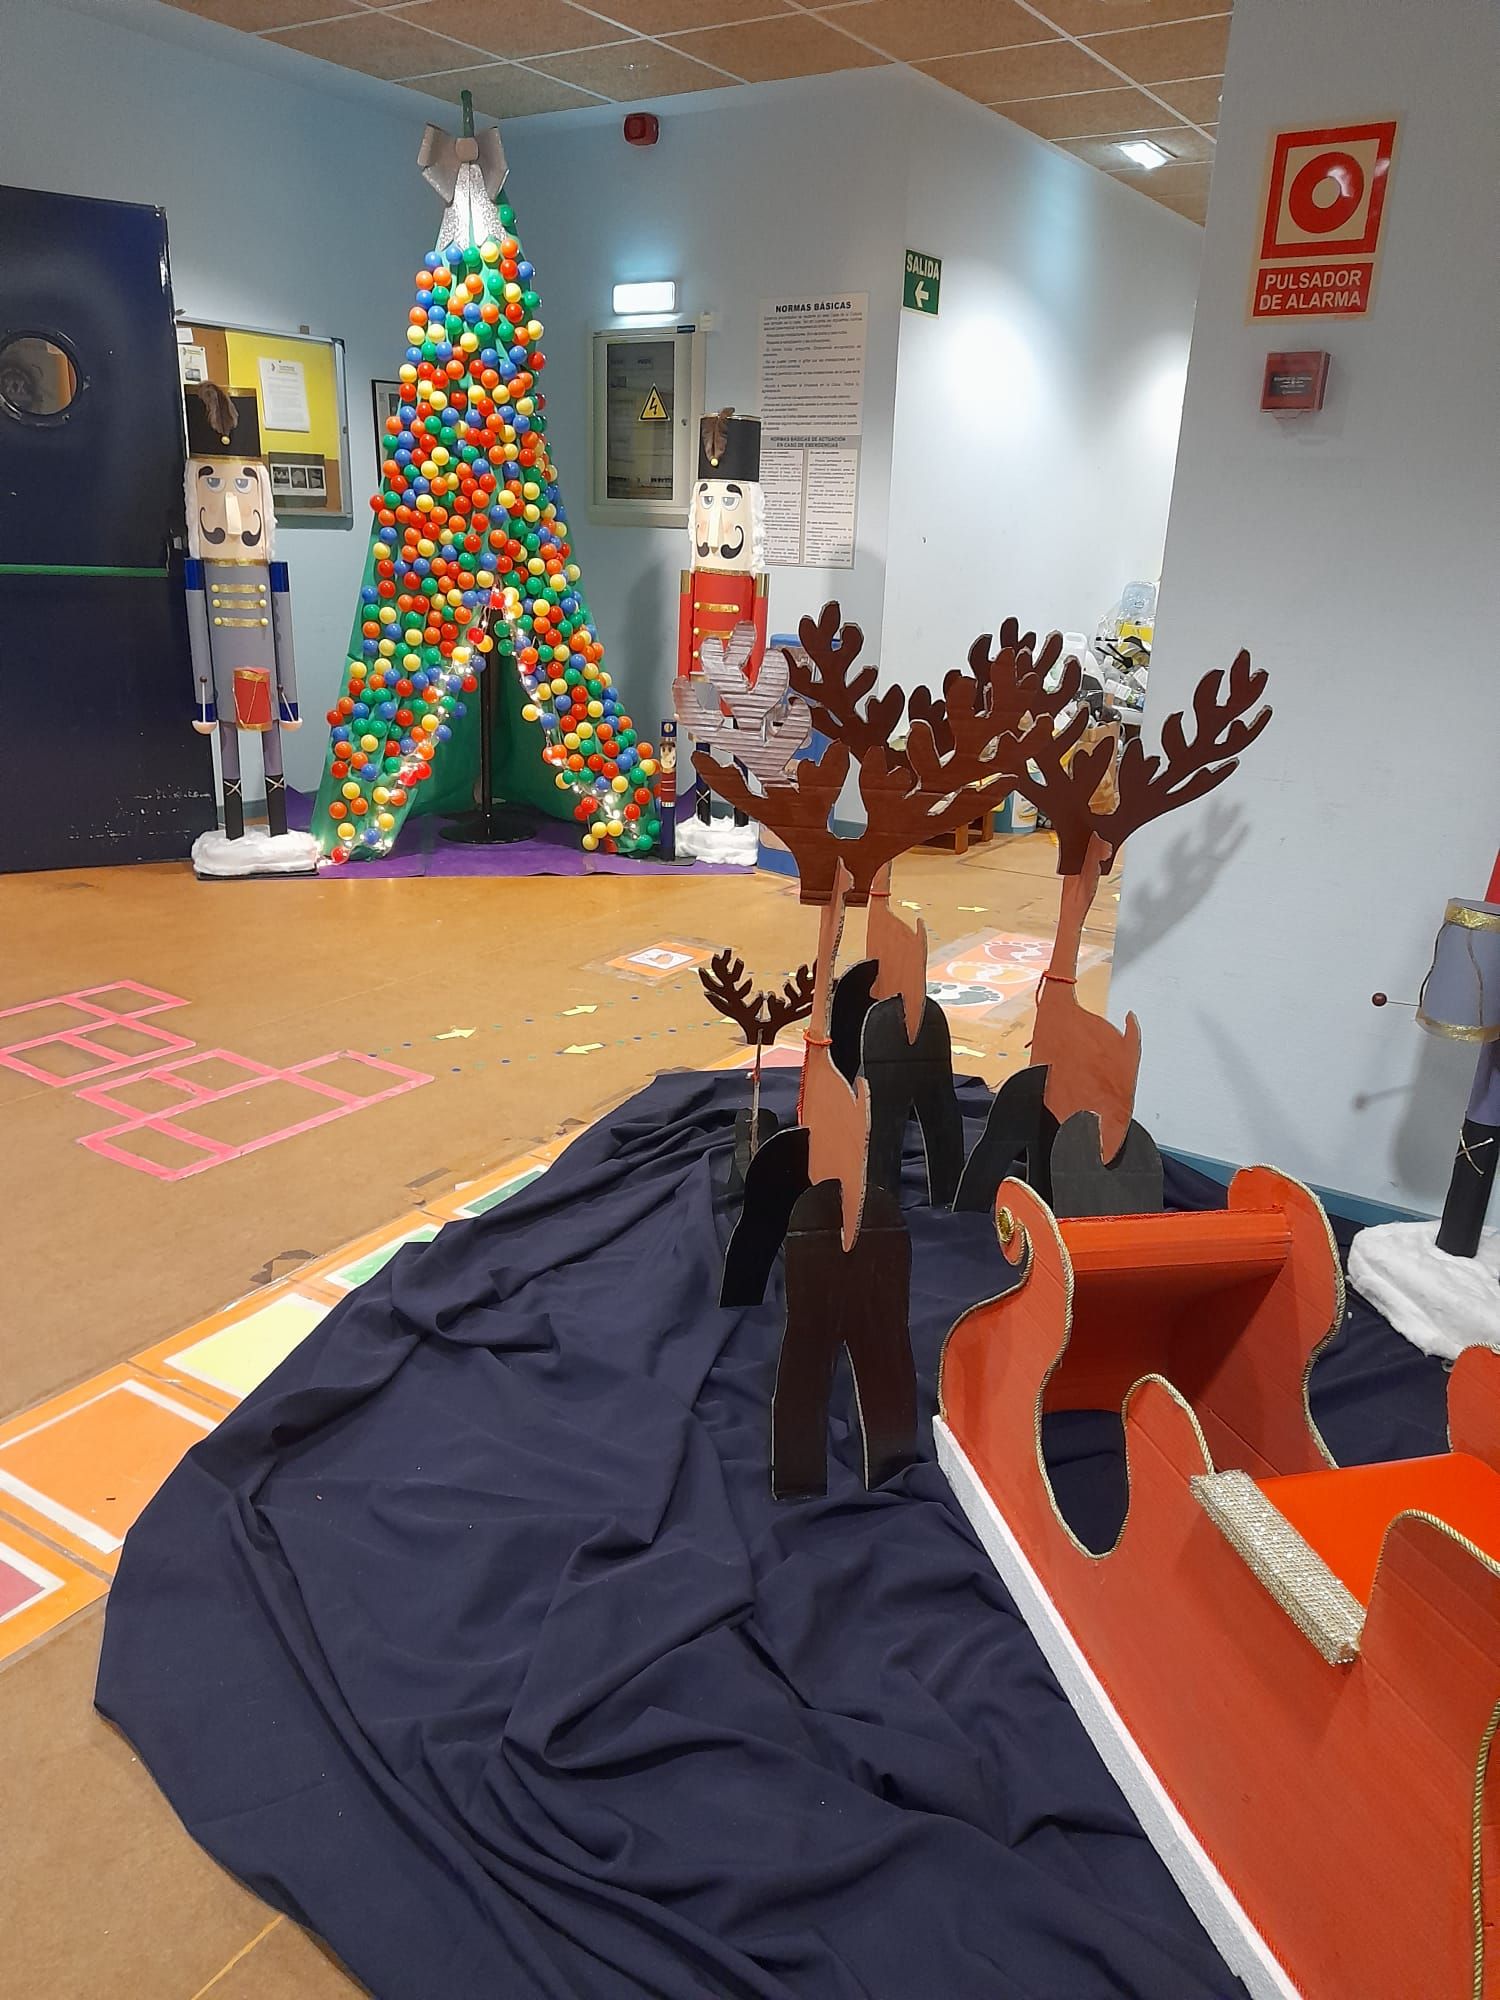 Así es la decoración navideña de Nava: trineos y teleféricos con los alumnos como protagonistas